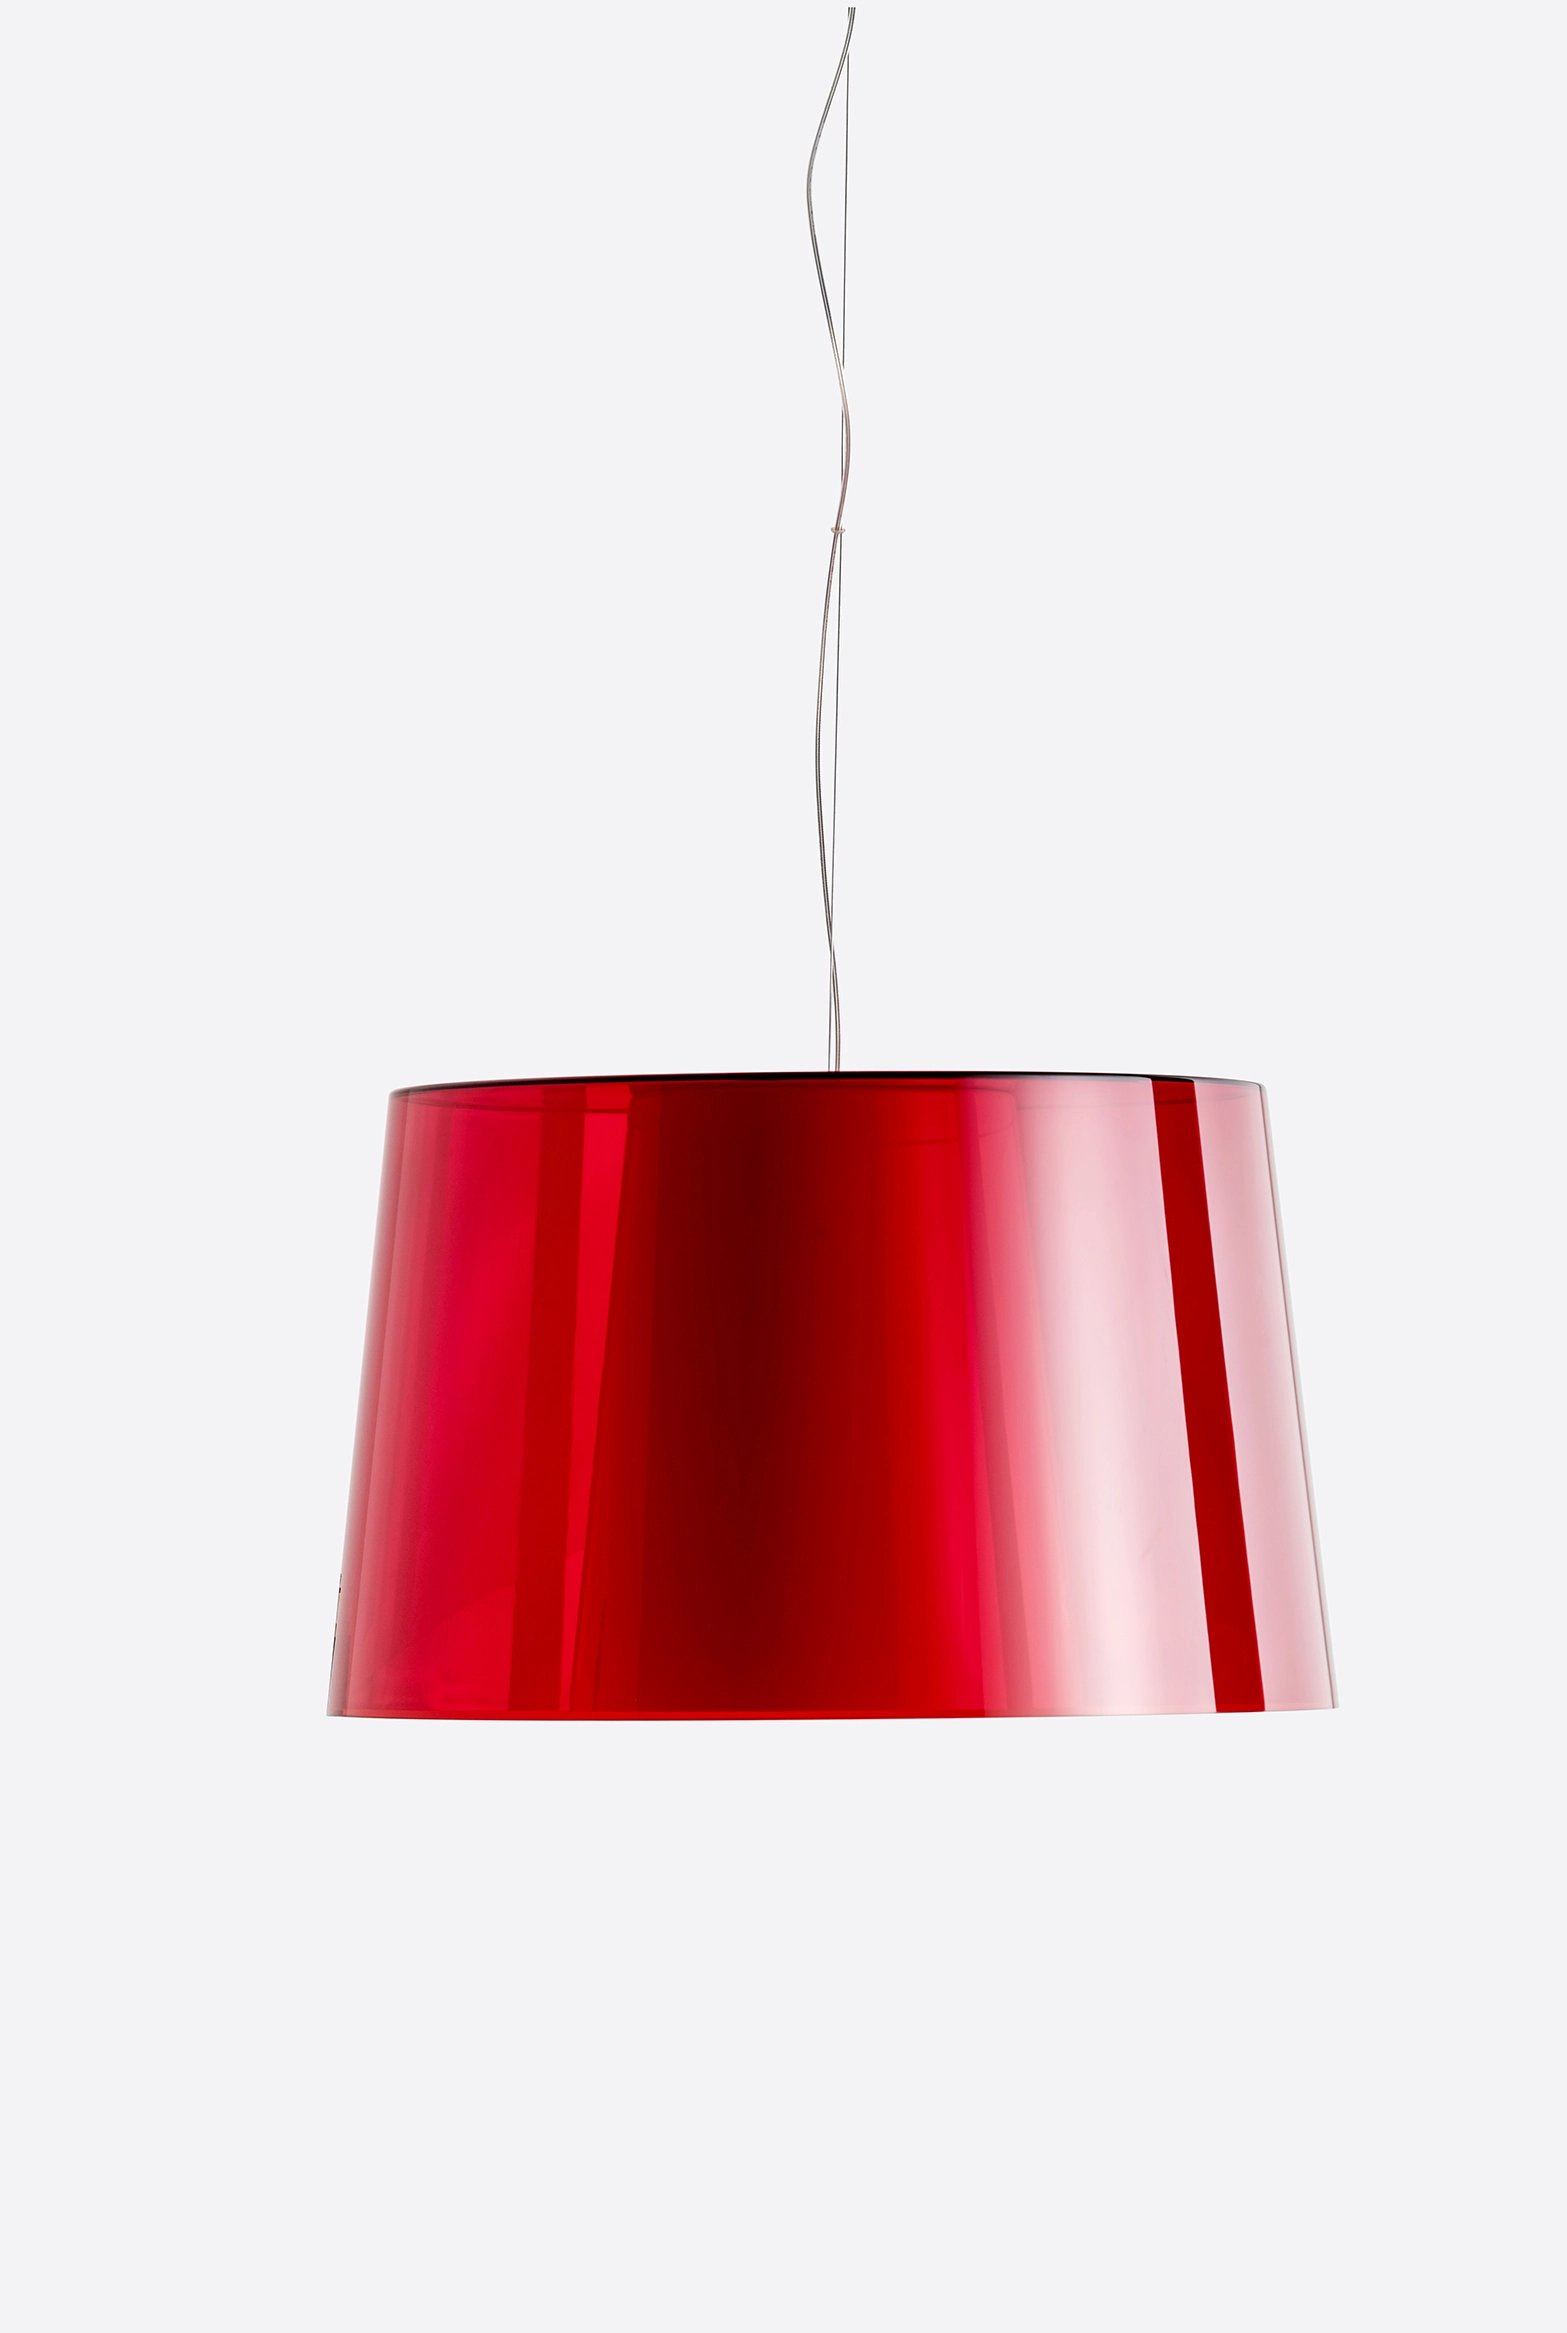 Hängelampe L001S/BA - Design Lampe von Pedrali TR - transparent weiss 4,0 Meter